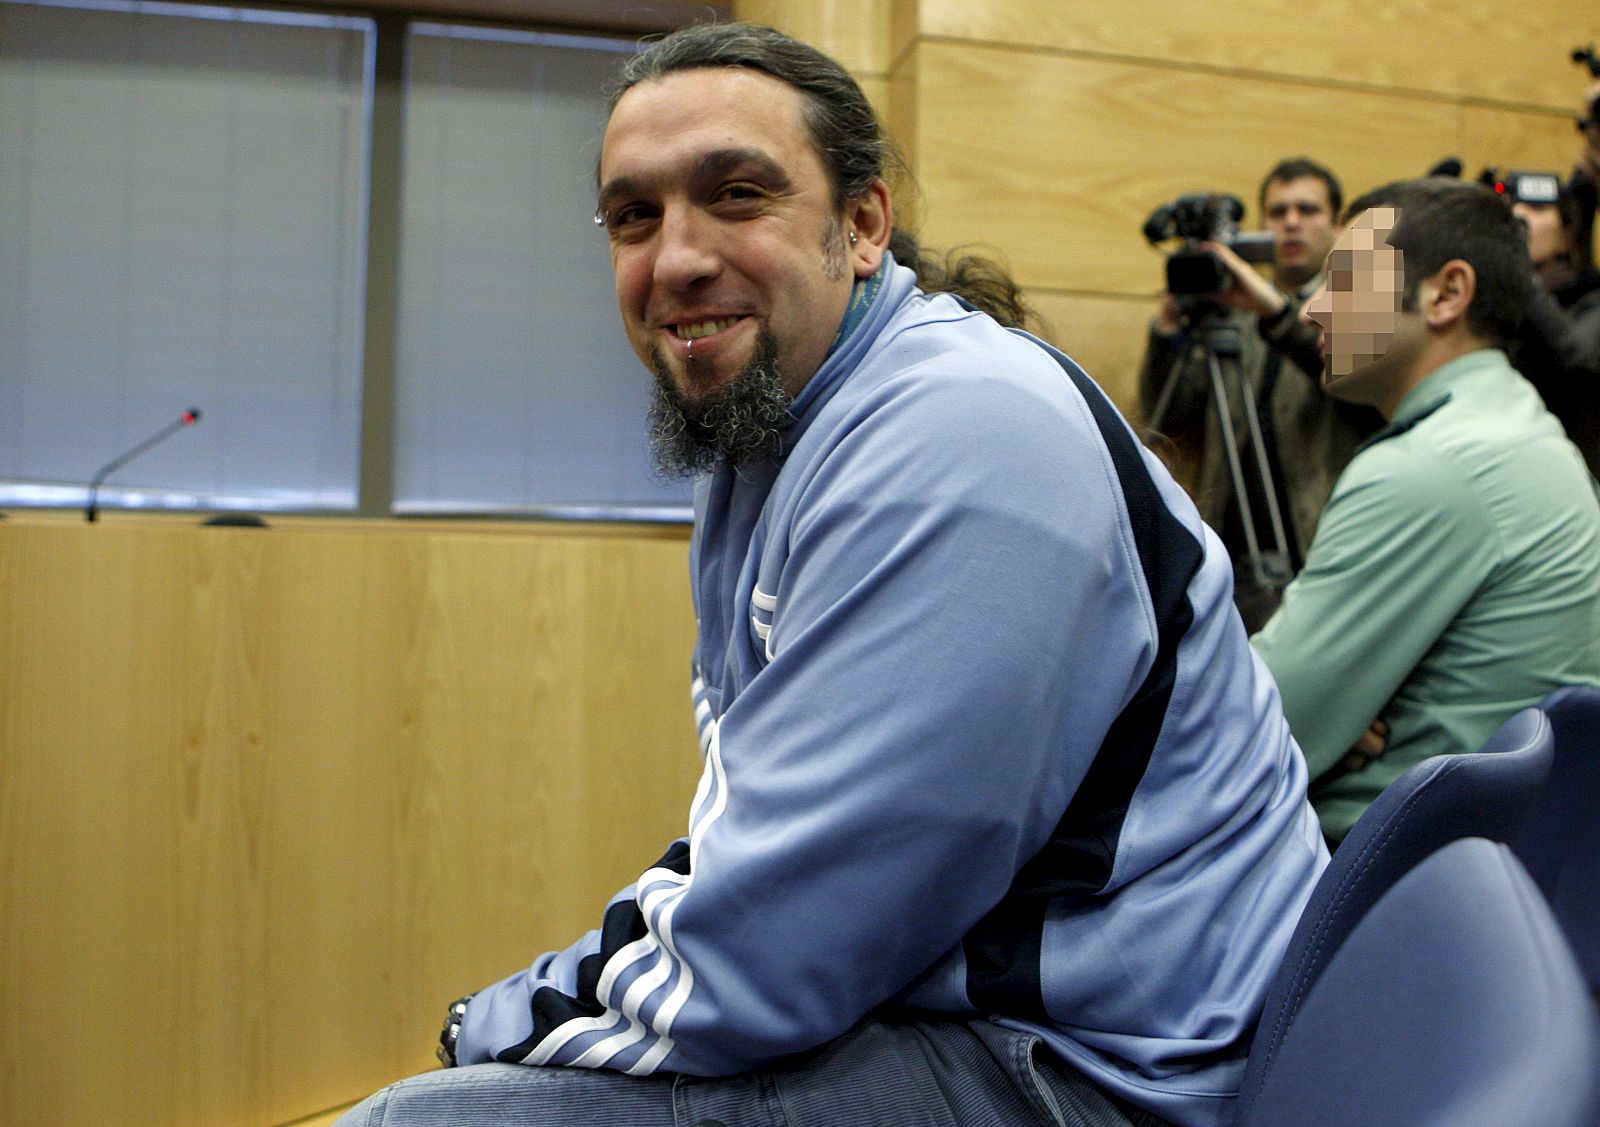 El seguidor del Olympique de Marsella Santos Mirasierra, durante el juicio que se sigue contra él.